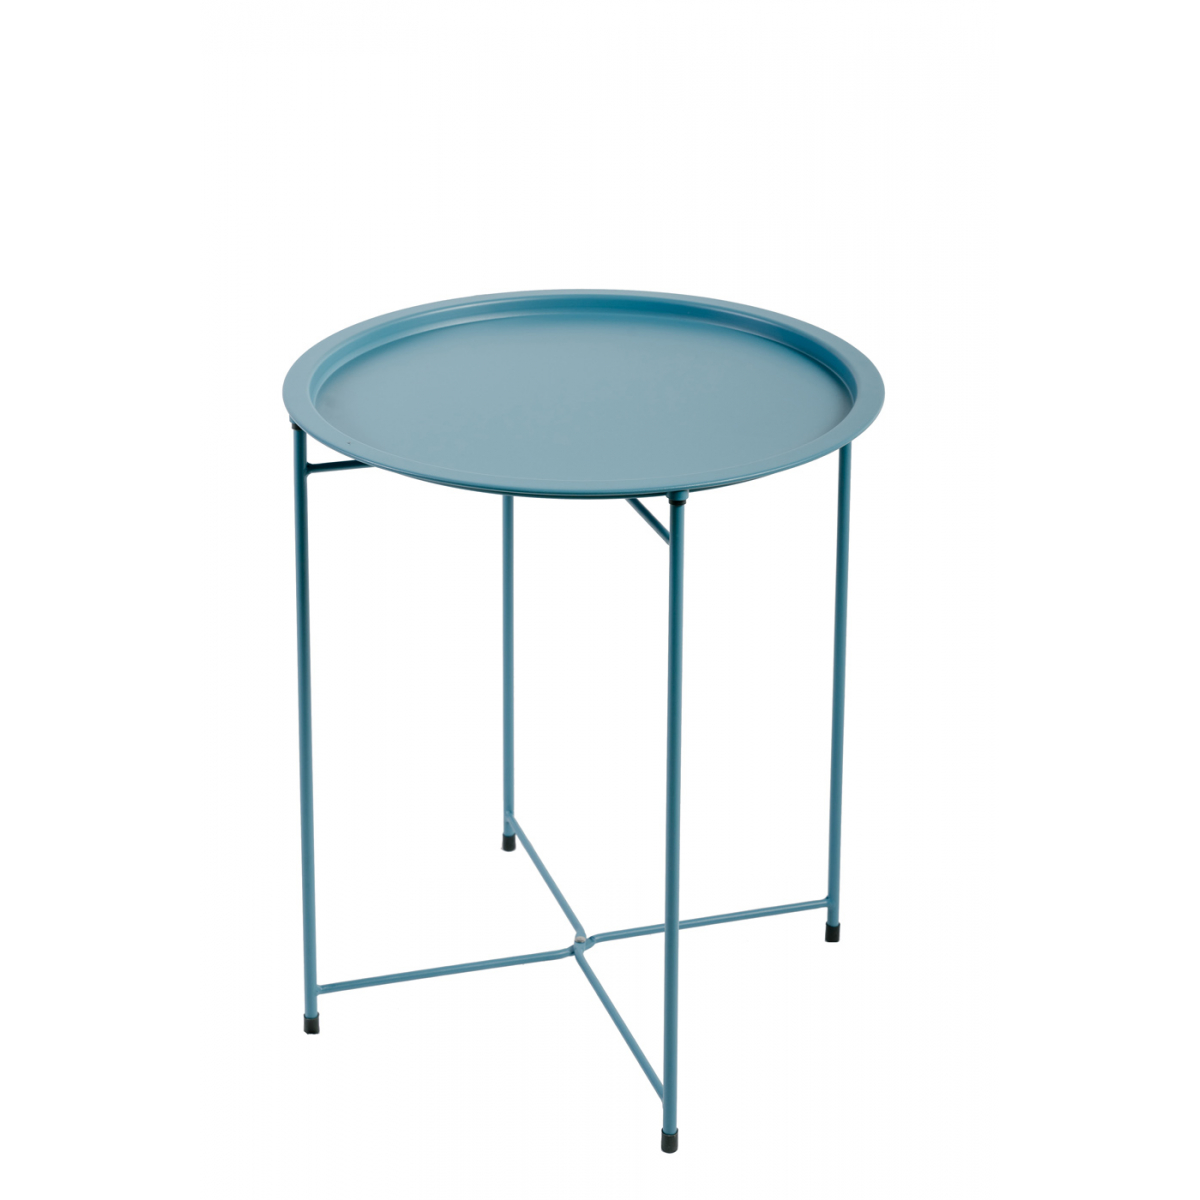 Table d'appoint pliante en acier bleu clair